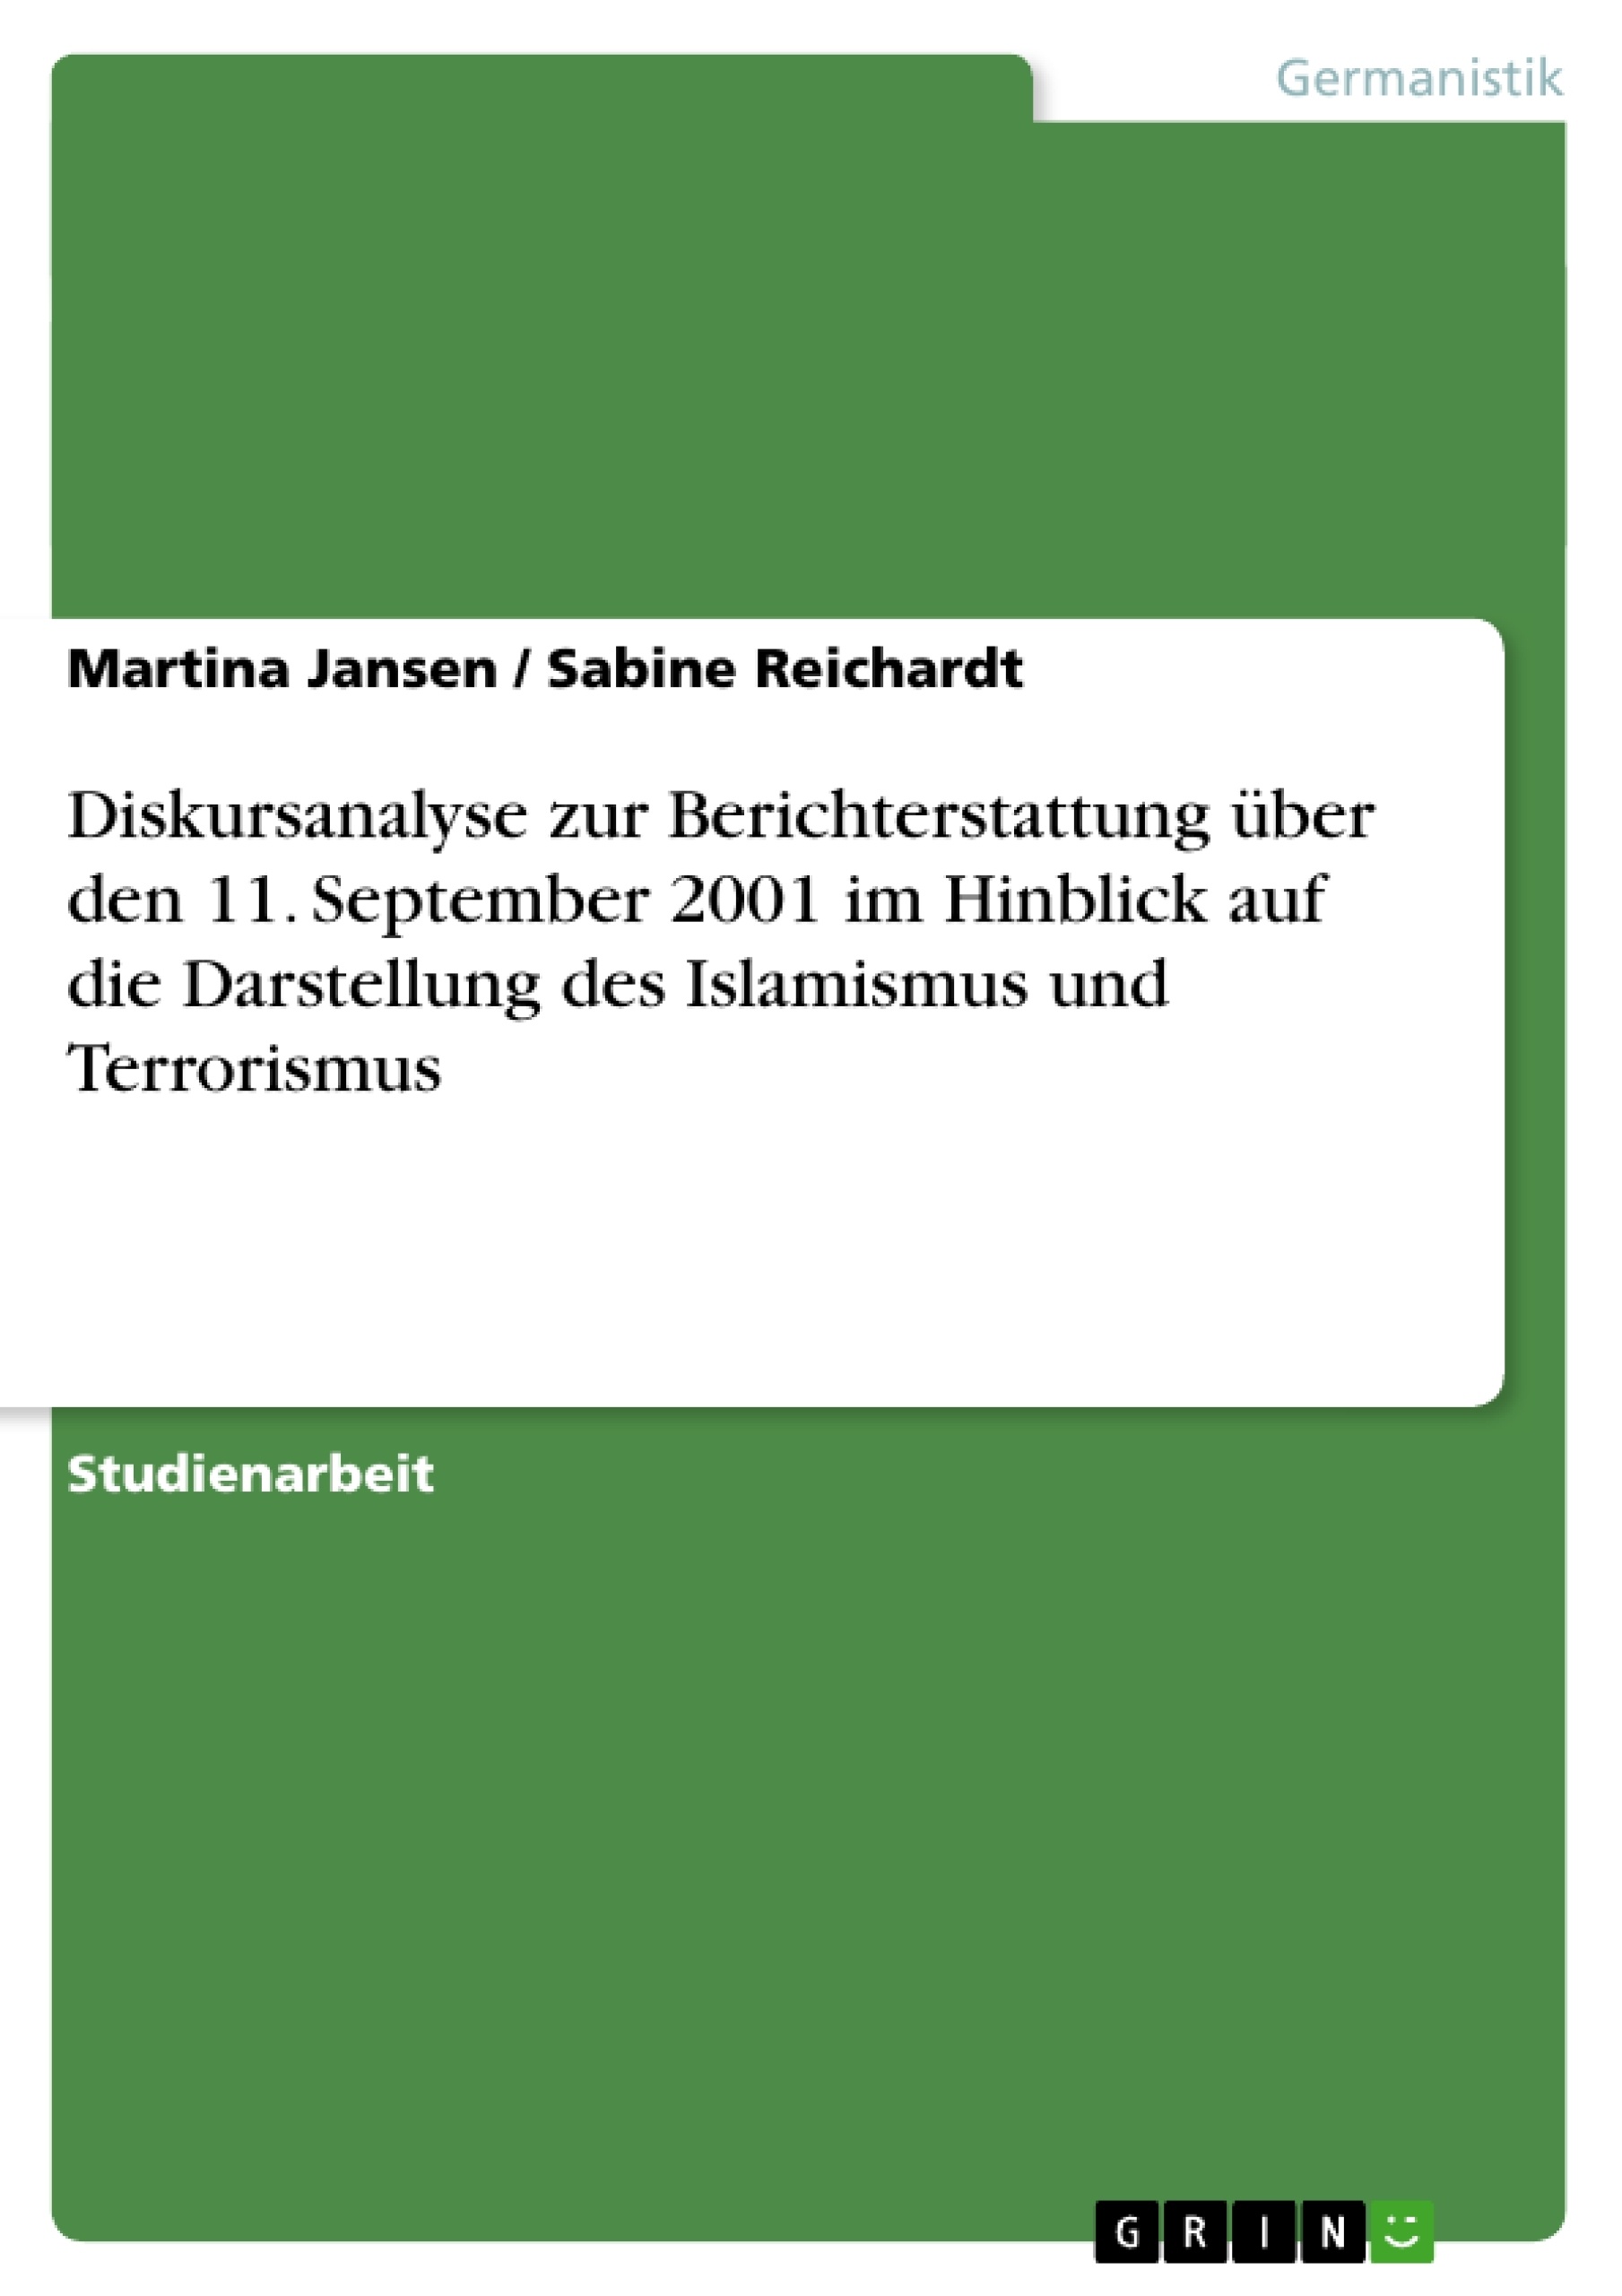 Título: Diskursanalyse zur Berichterstattung über den 11. September 2001 im Hinblick auf die Darstellung des Islamismus und Terrorismus